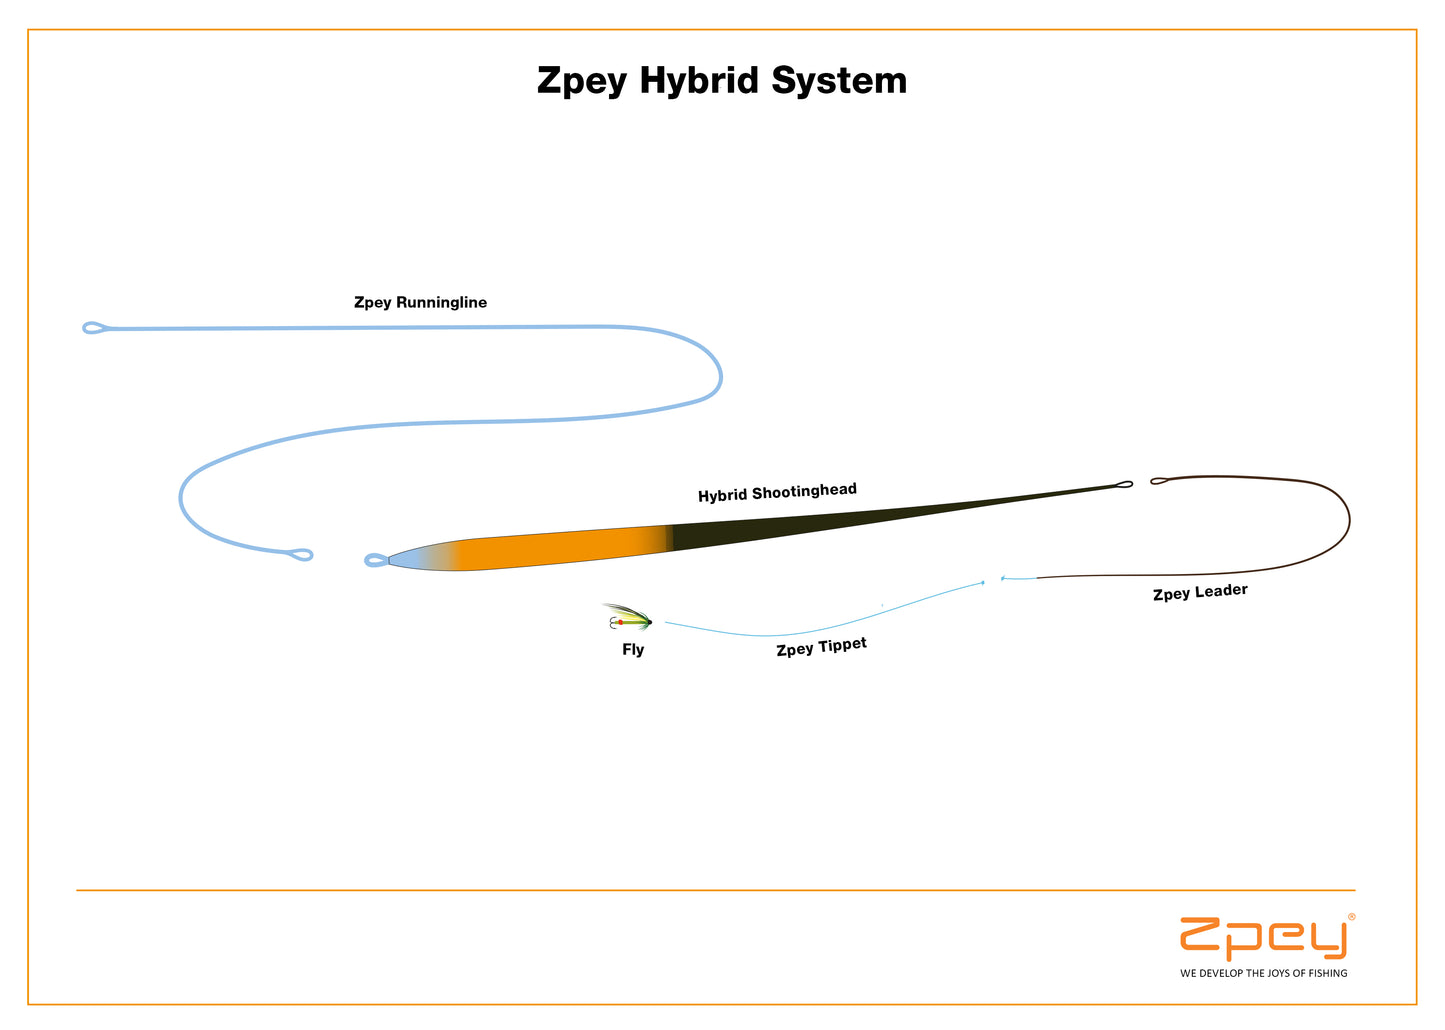 Zpey Hybrid Shootinghead, Float/Sink2/Sink3